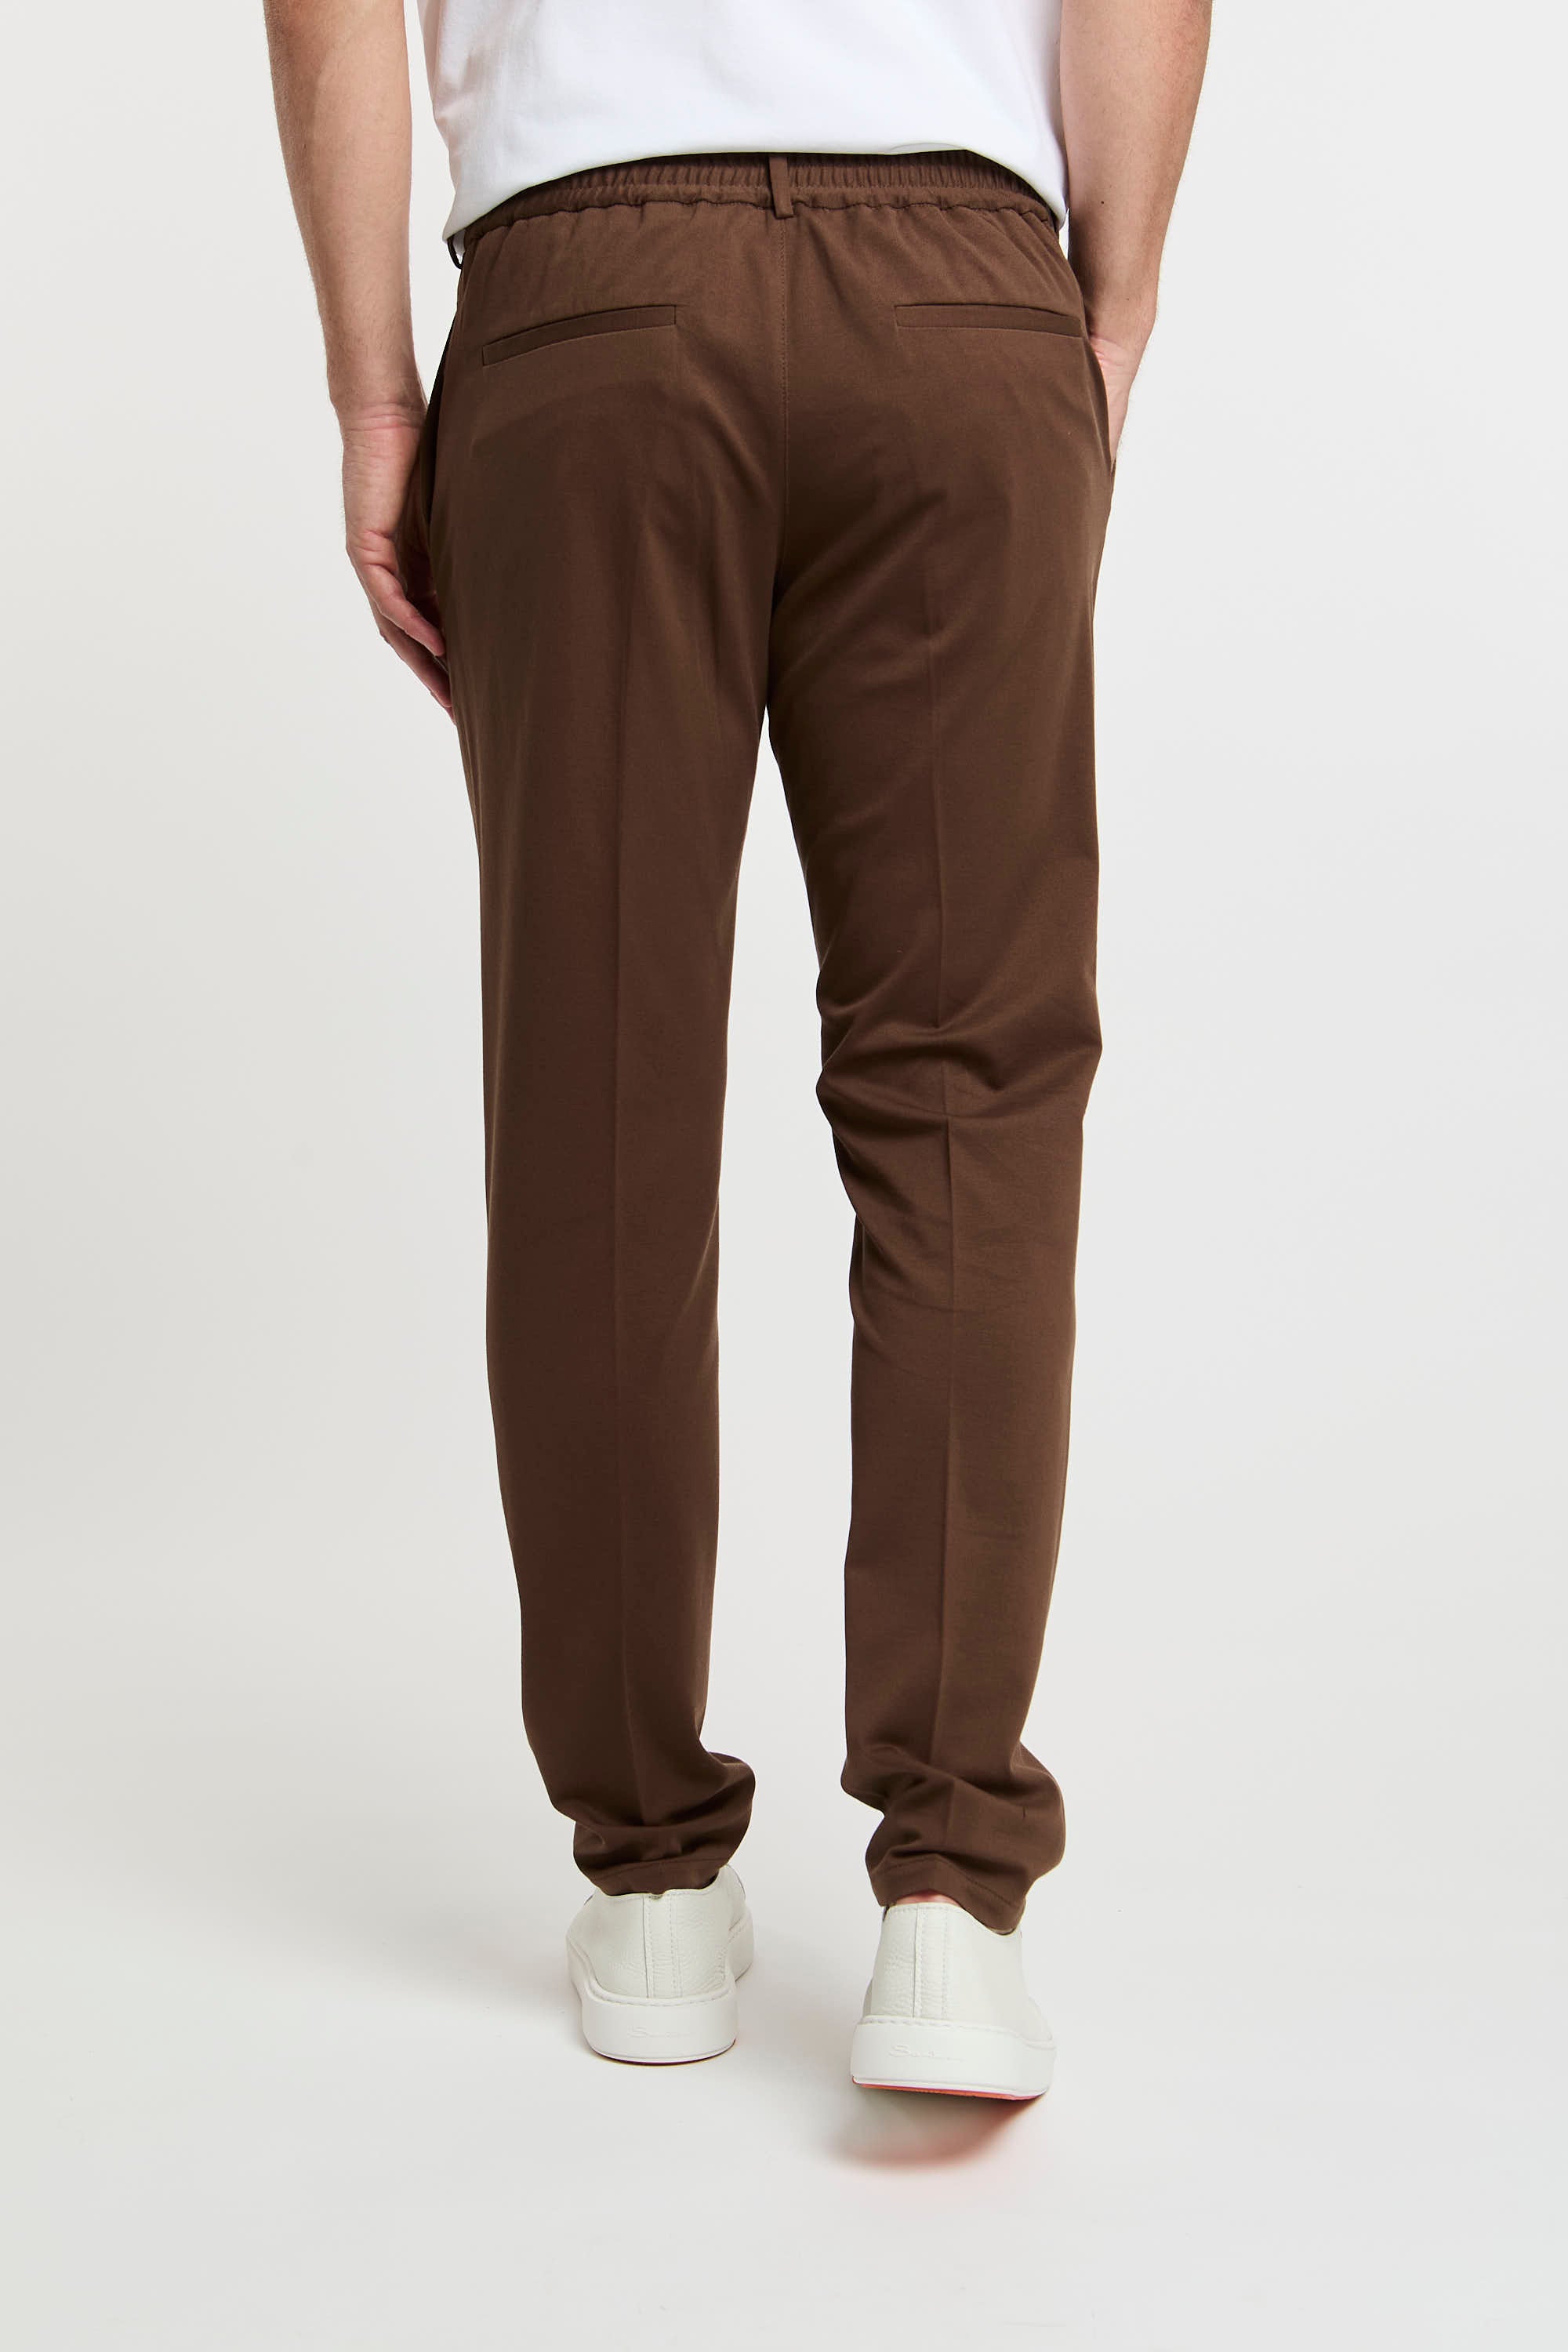 Pantalone in cotone-5